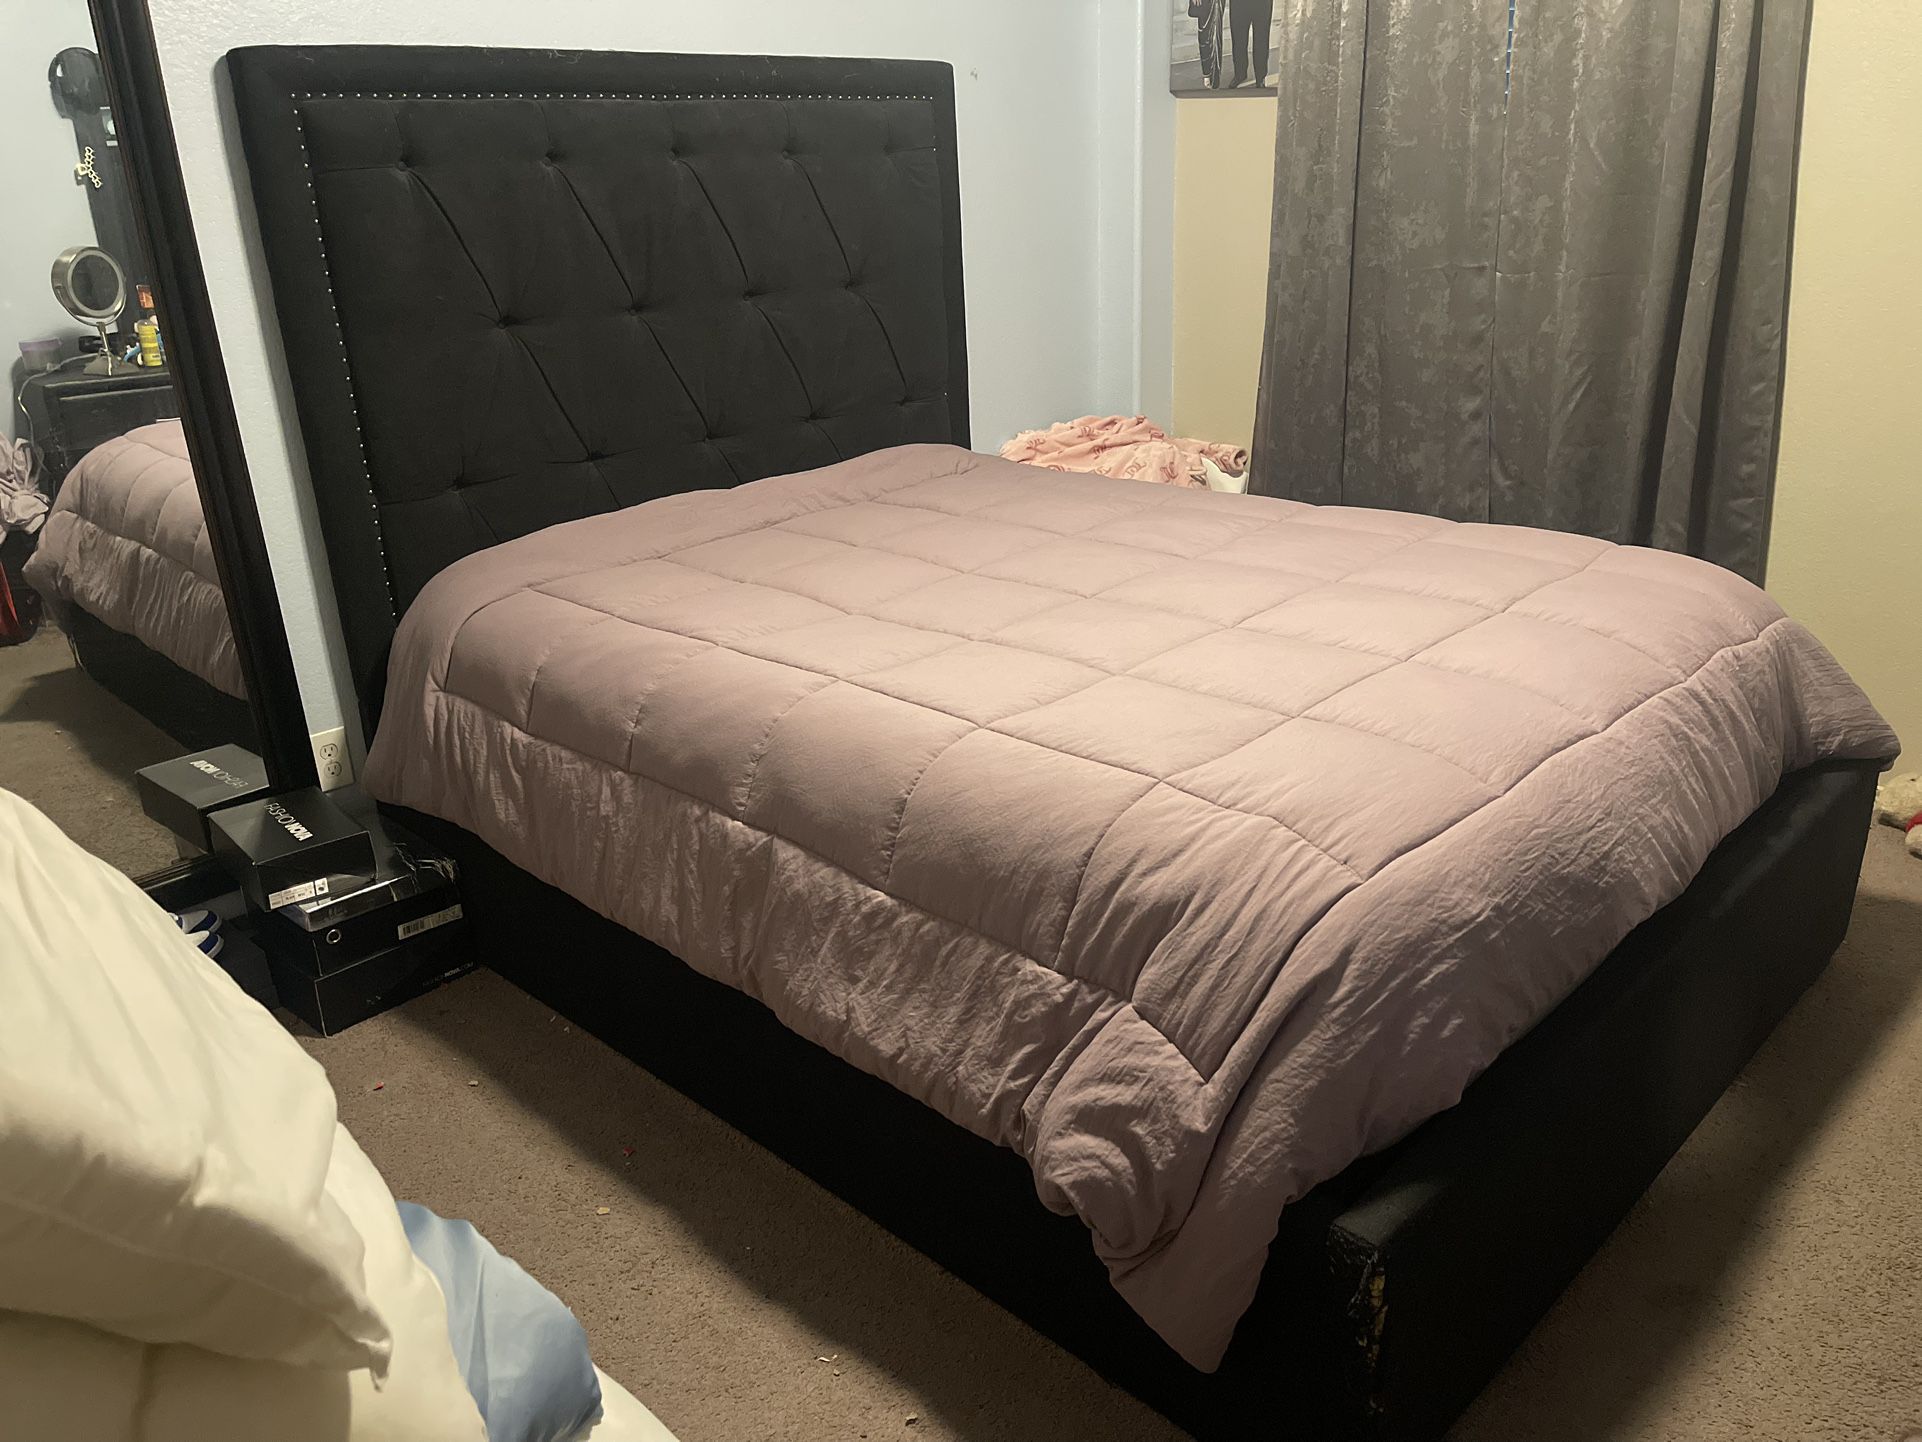 Queen Bed Frame “no Mattress)